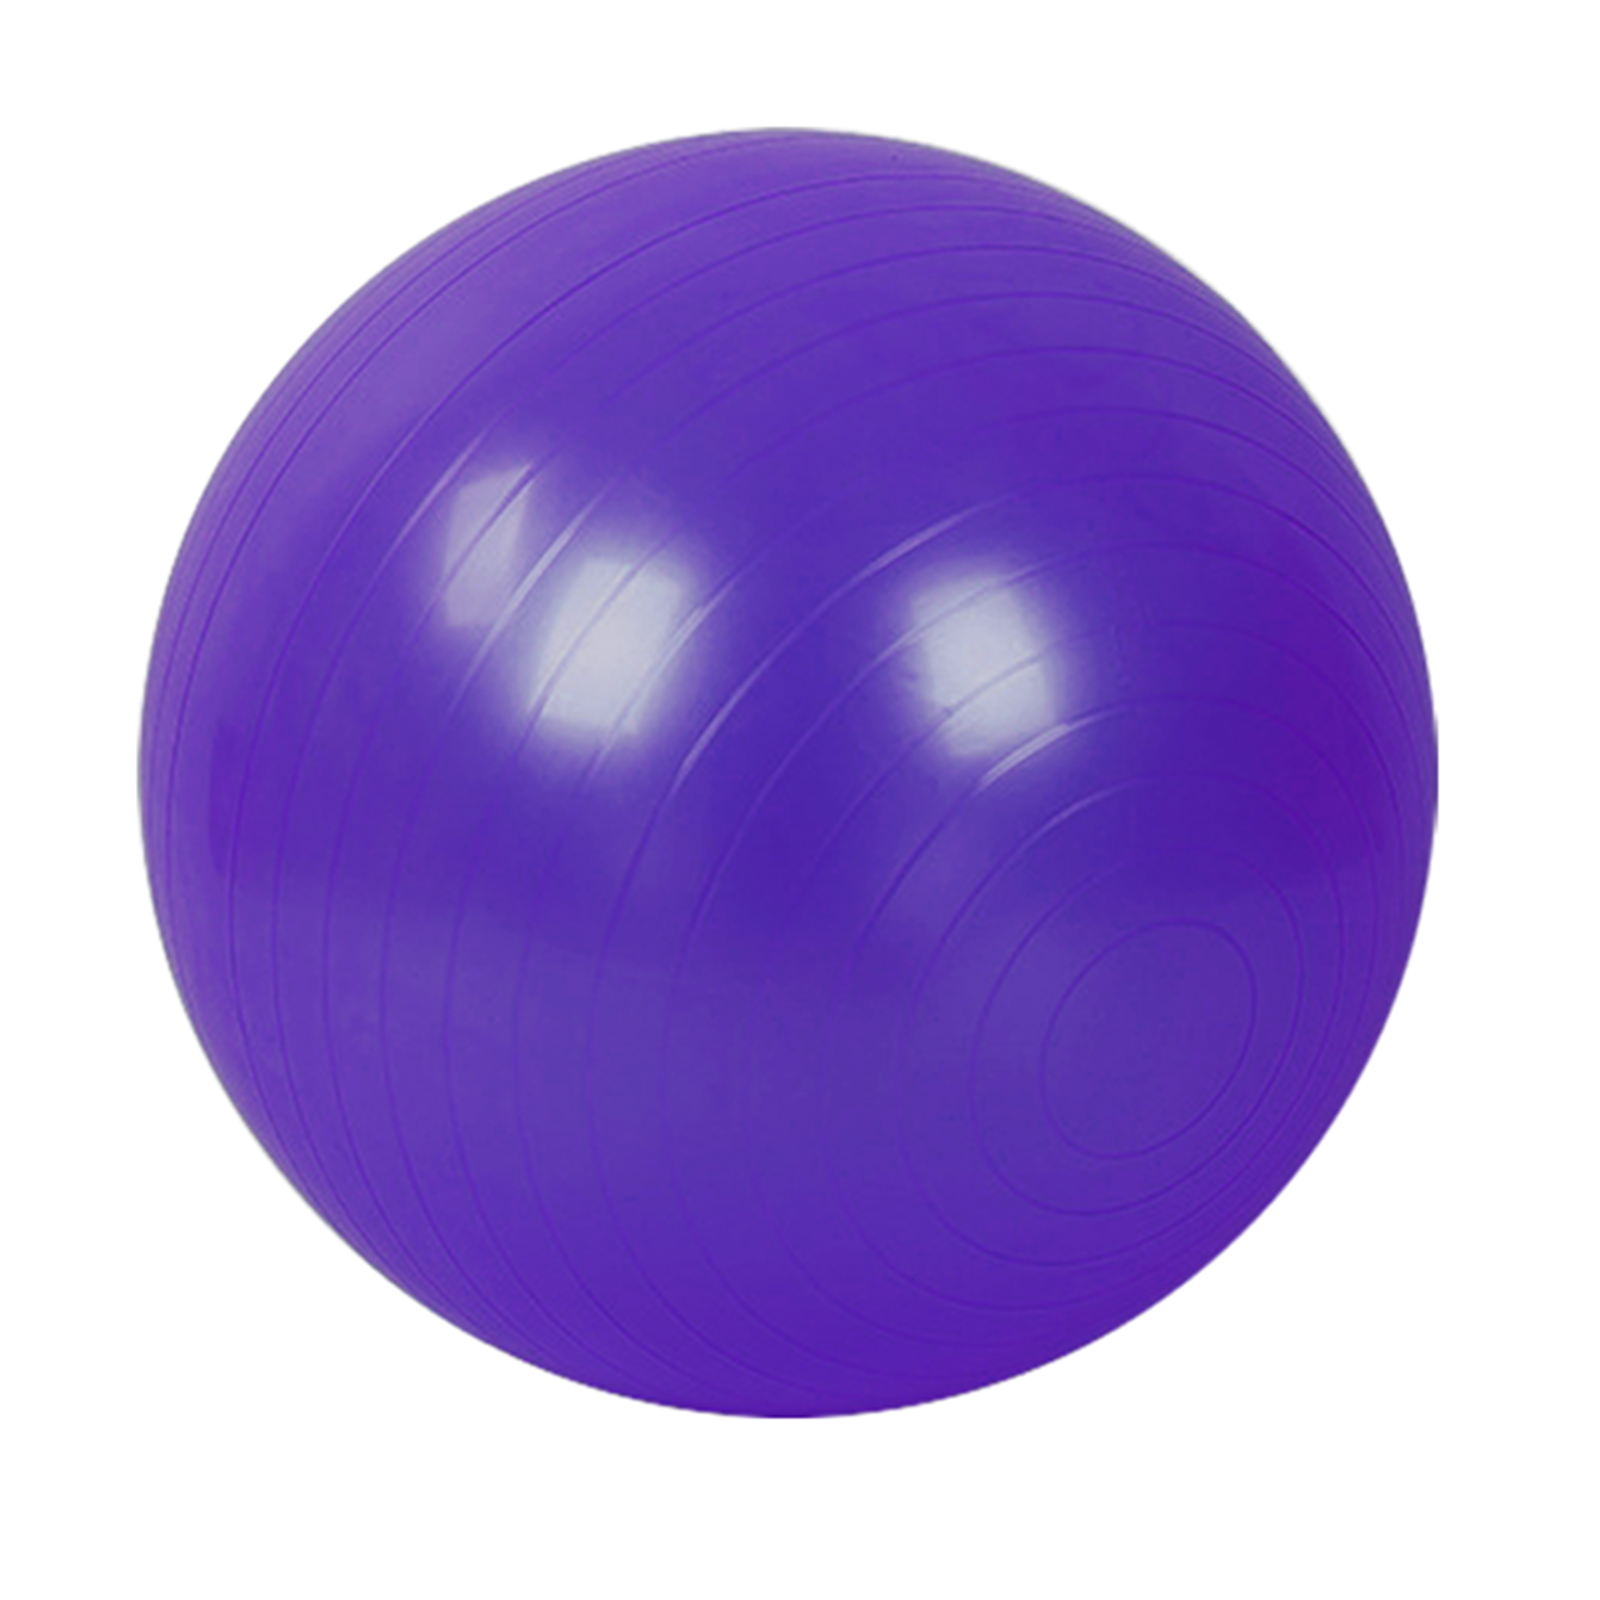 Фитбол с насосом UNIX Fit антивзрыв, 75 см, фиолетовый UNIX Fit™ Фитболы